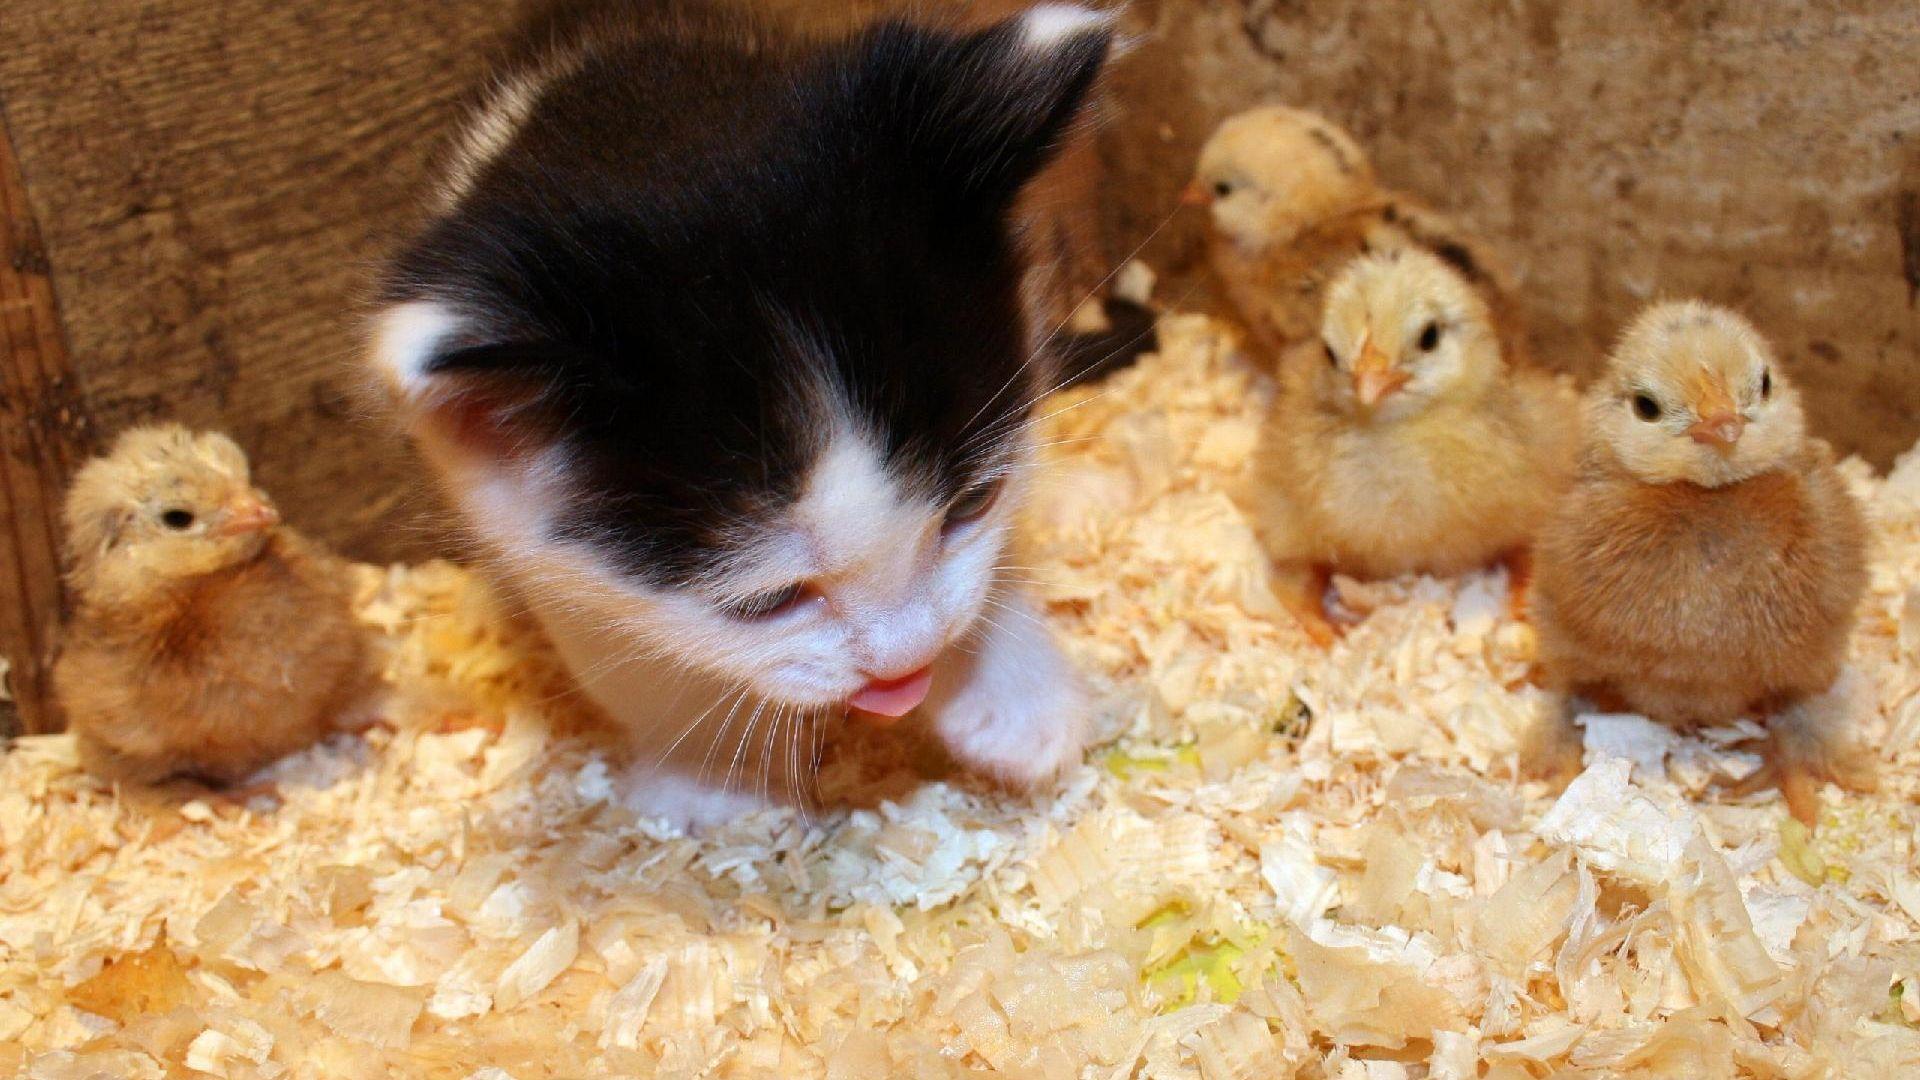 Kitten With Baby Chicks HD desktop wallpaper, Widescreen, High